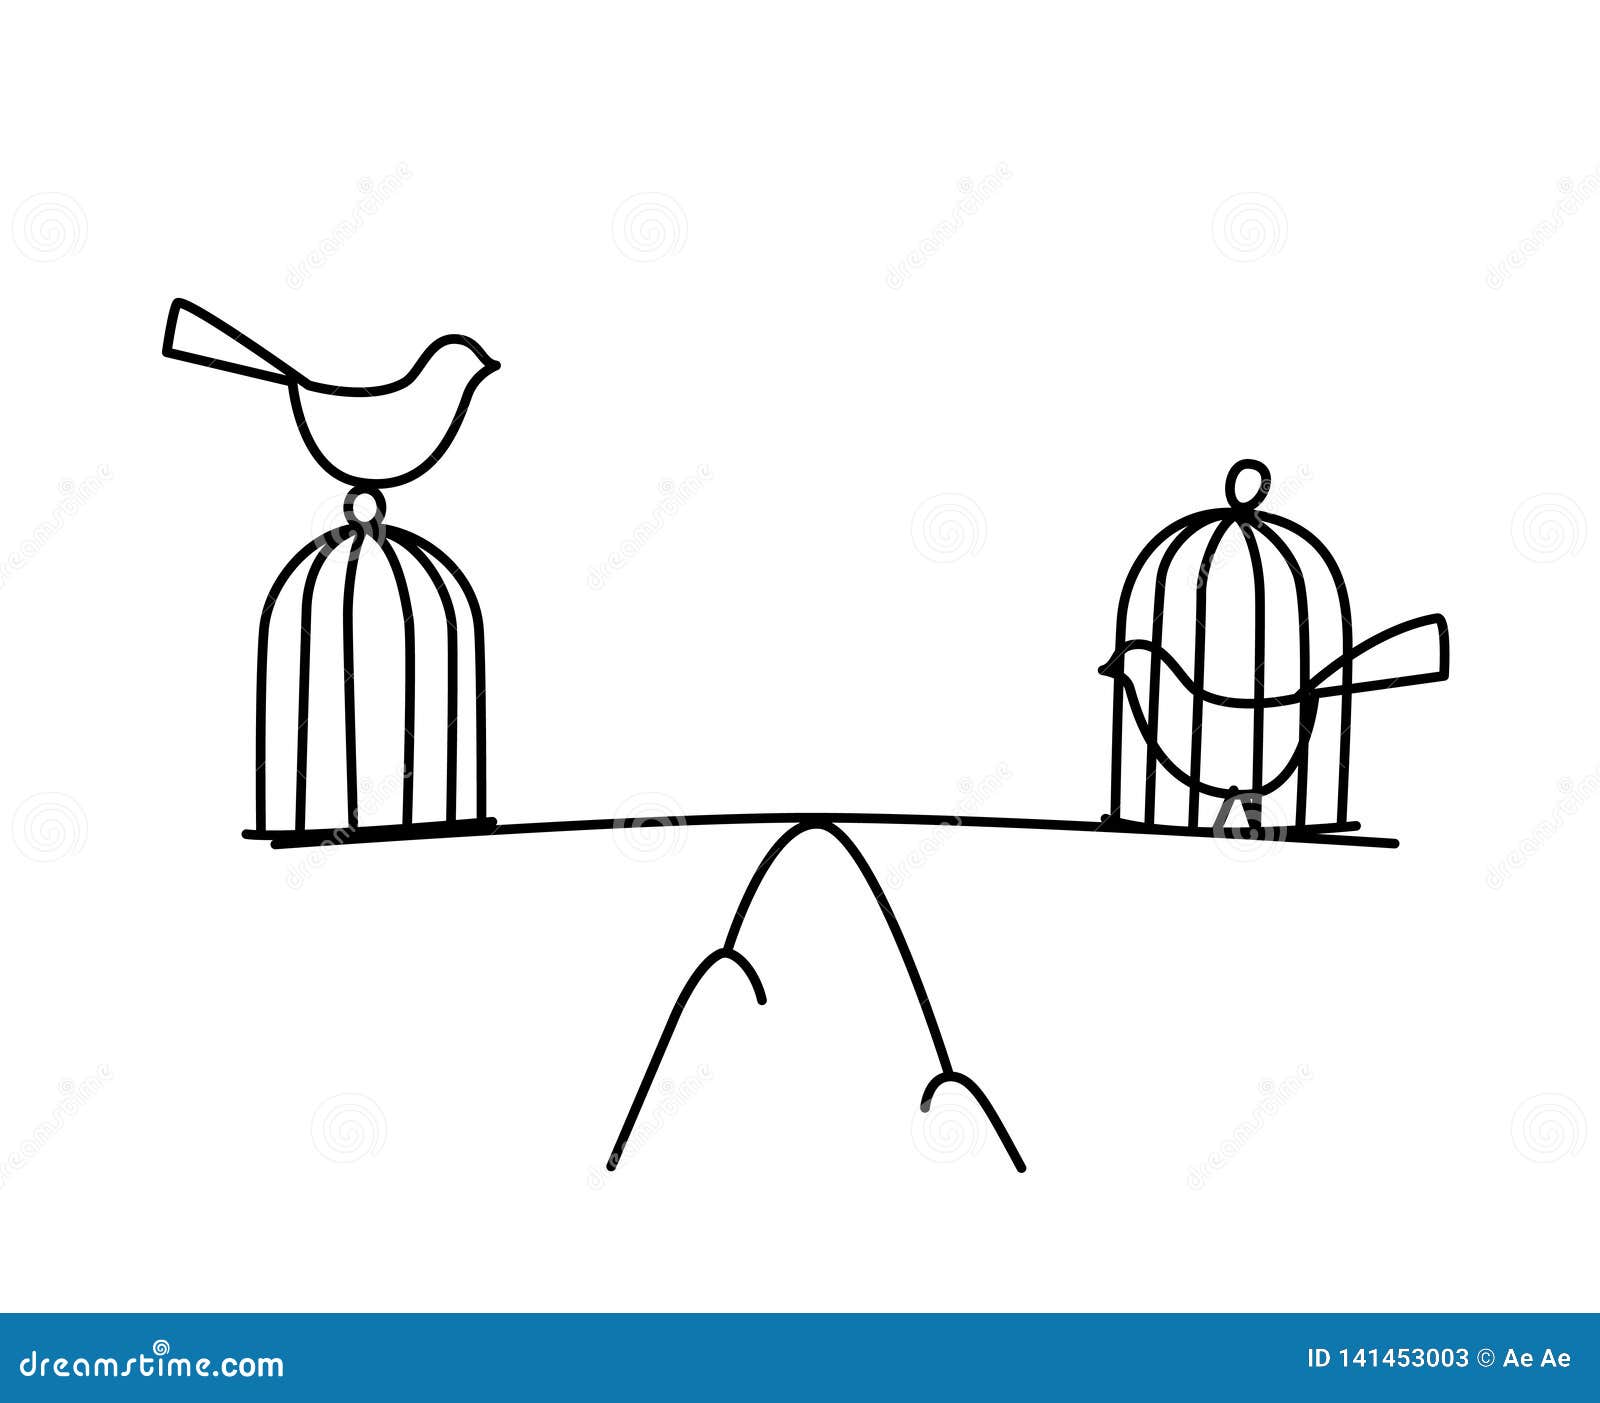 https://thumbs.dreamstime.com/z/illustration-d-un-oiseau-dans-une-cage-et-%C3%A0-grand-vecteur-libert%C3%A9-prison-l-%C3%A9quilibre-entre-la-emprisonnement-m%C3%A9ta-m%C3%A9taphore-141453003.jpg